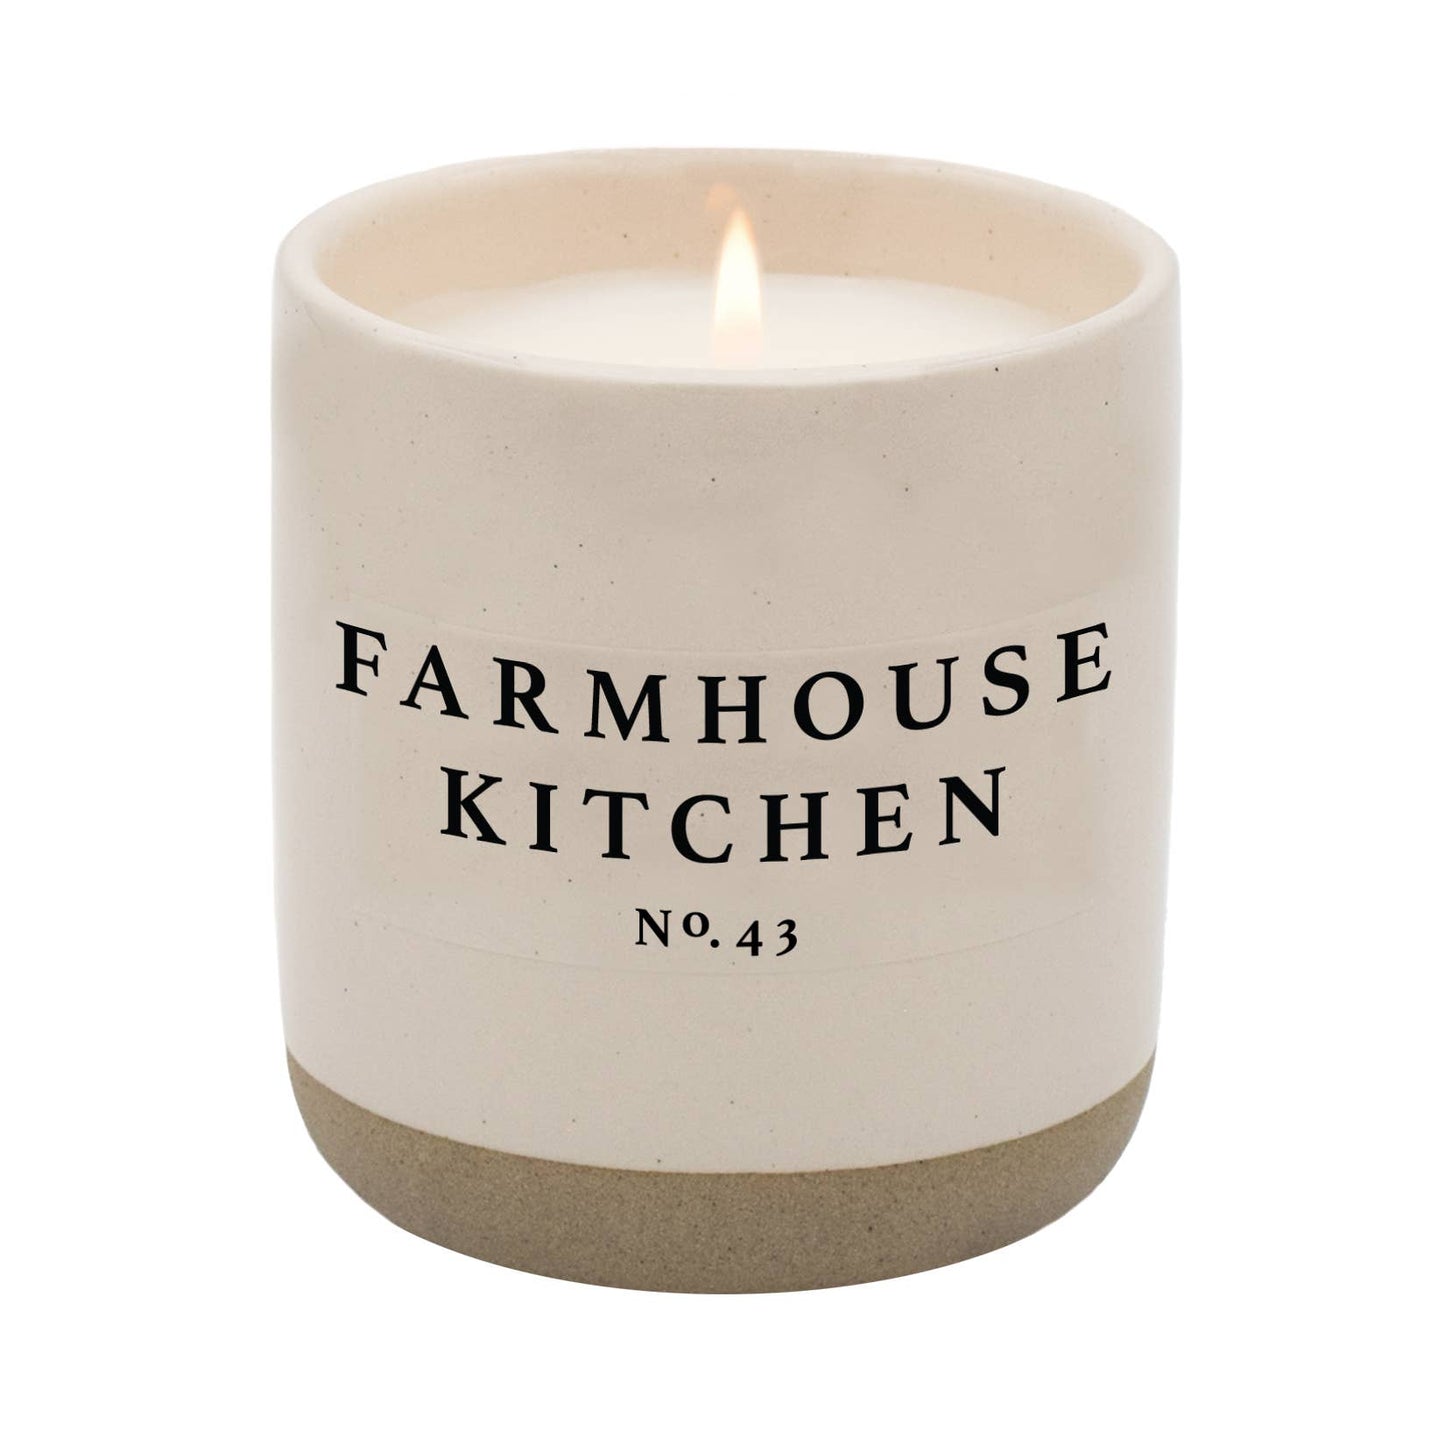 farmhouse kitchen soy candle - cream stoneware jar - 12 oz